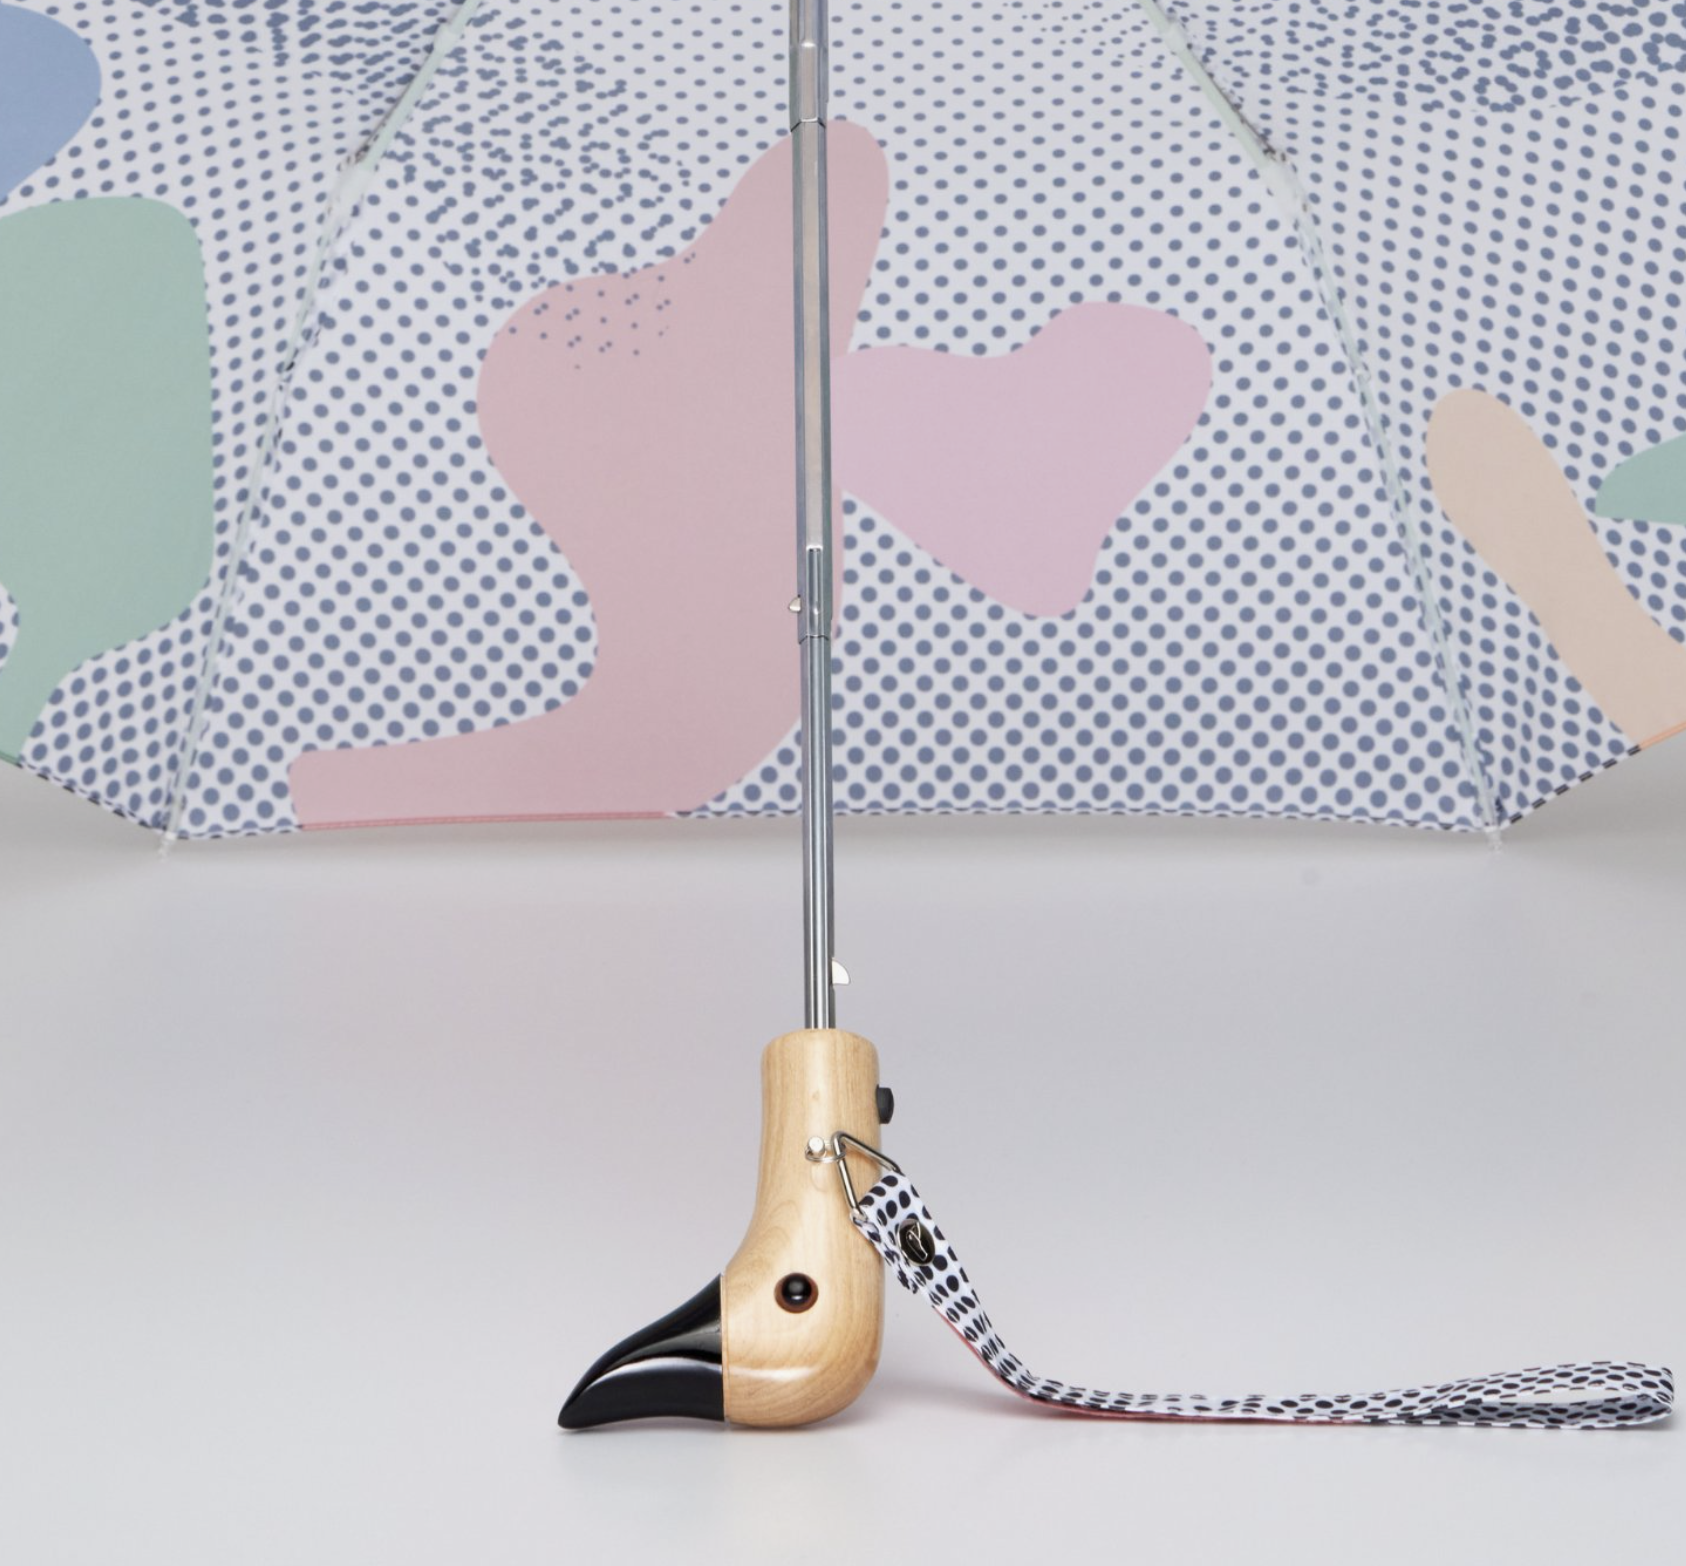 Duckhead Compact Mini Umbrella - Dots/Shapes